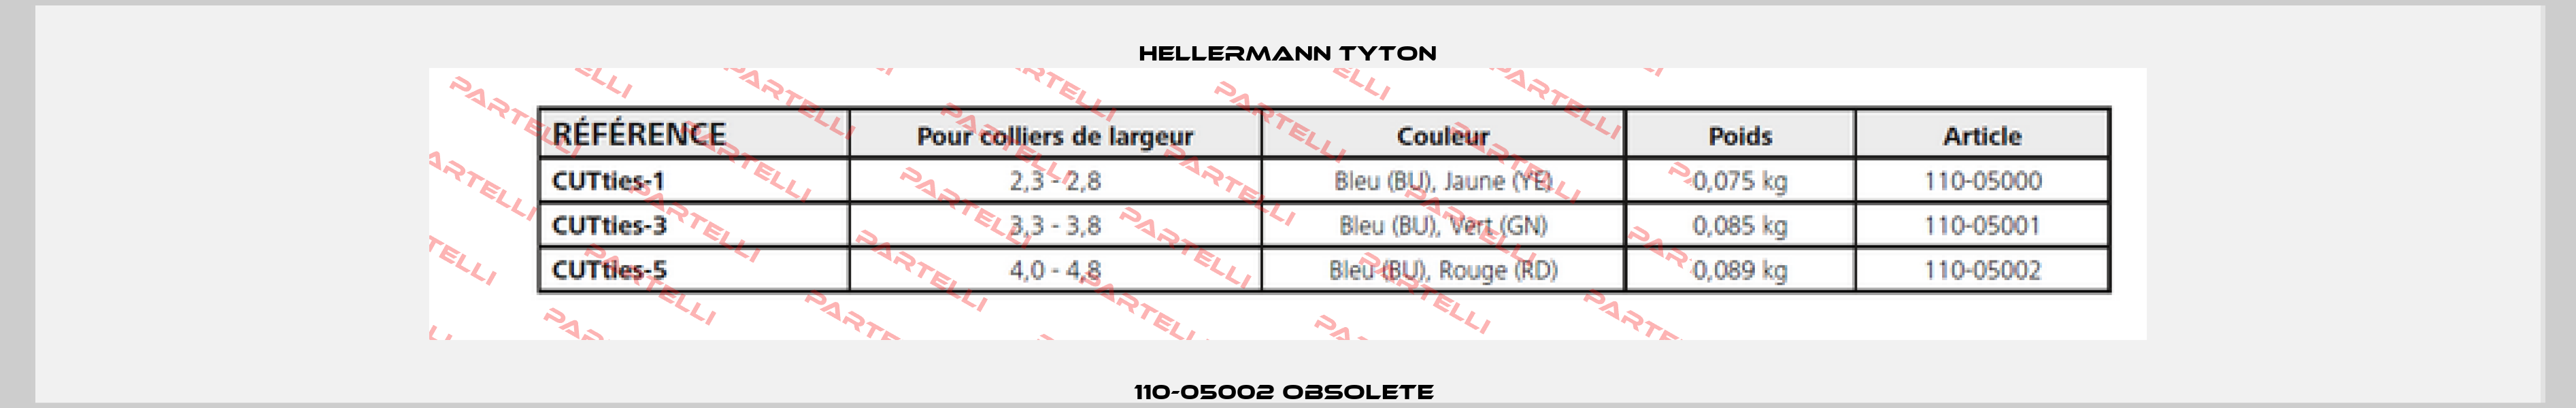 110-05002 obsolete  Hellermann Tyton